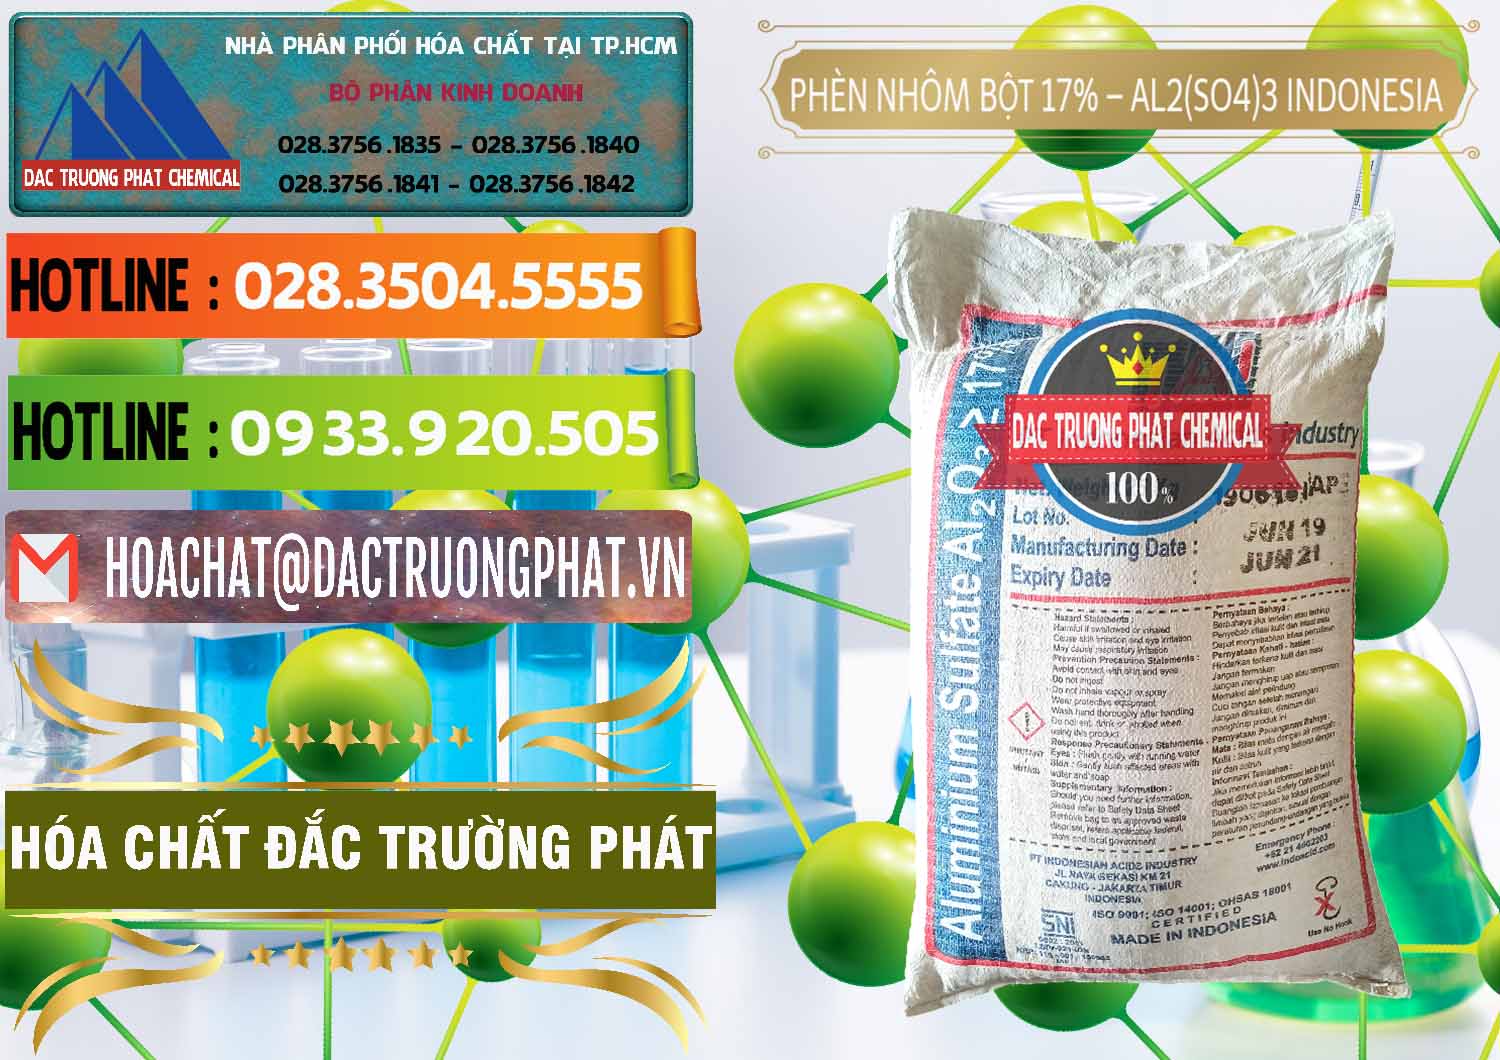 Cty chuyên bán & cung cấp Phèn Nhôm Bột - Al2(SO4)3 17% bao 25kg Indonesia - 0114 - Cty chuyên phân phối & kinh doanh hóa chất tại TP.HCM - cungcaphoachat.com.vn